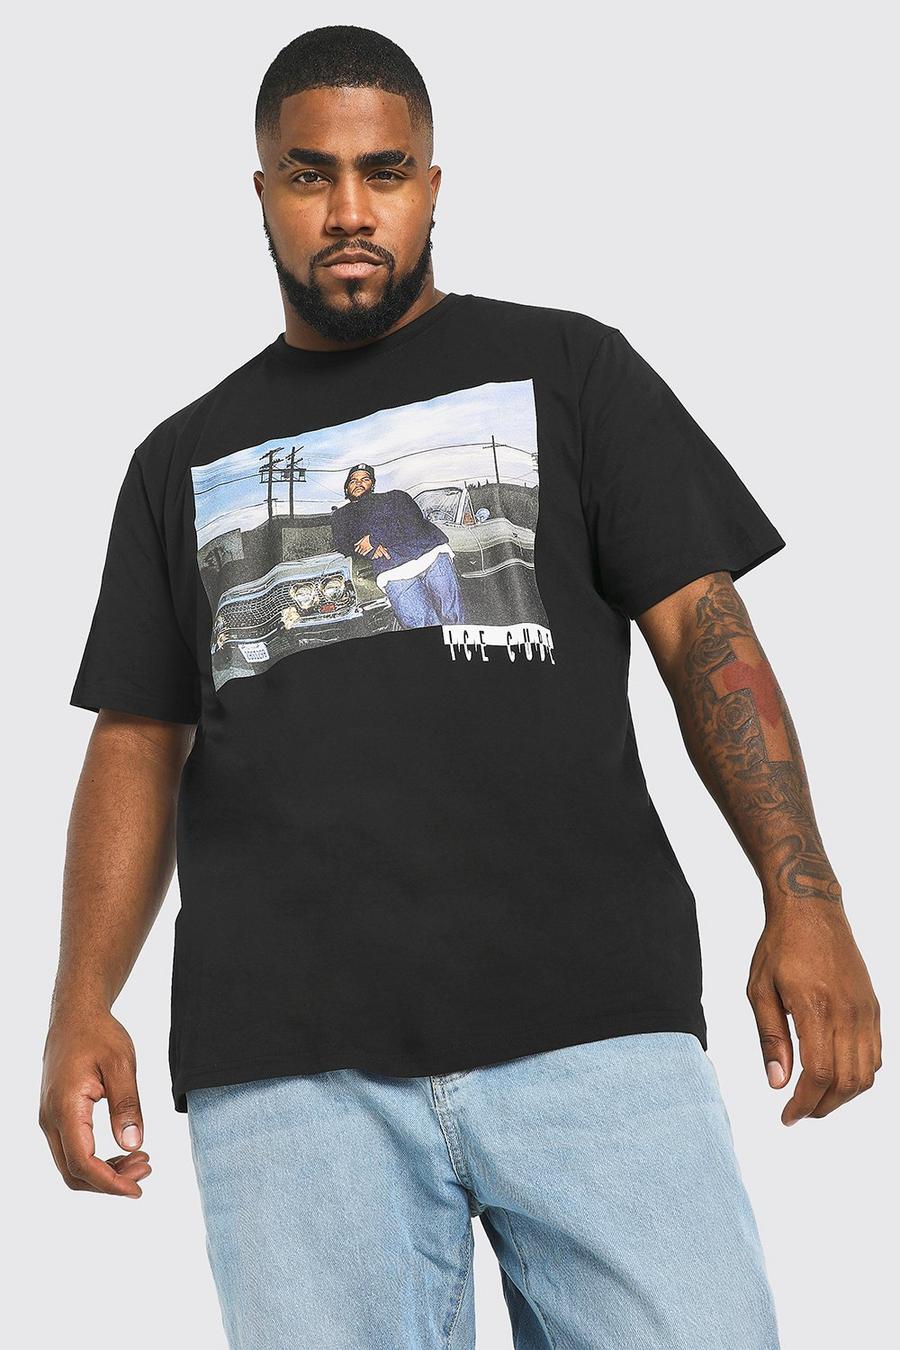 שחור nero טישרט Ice Cube ממותג לגברים גדולים וגבוהים